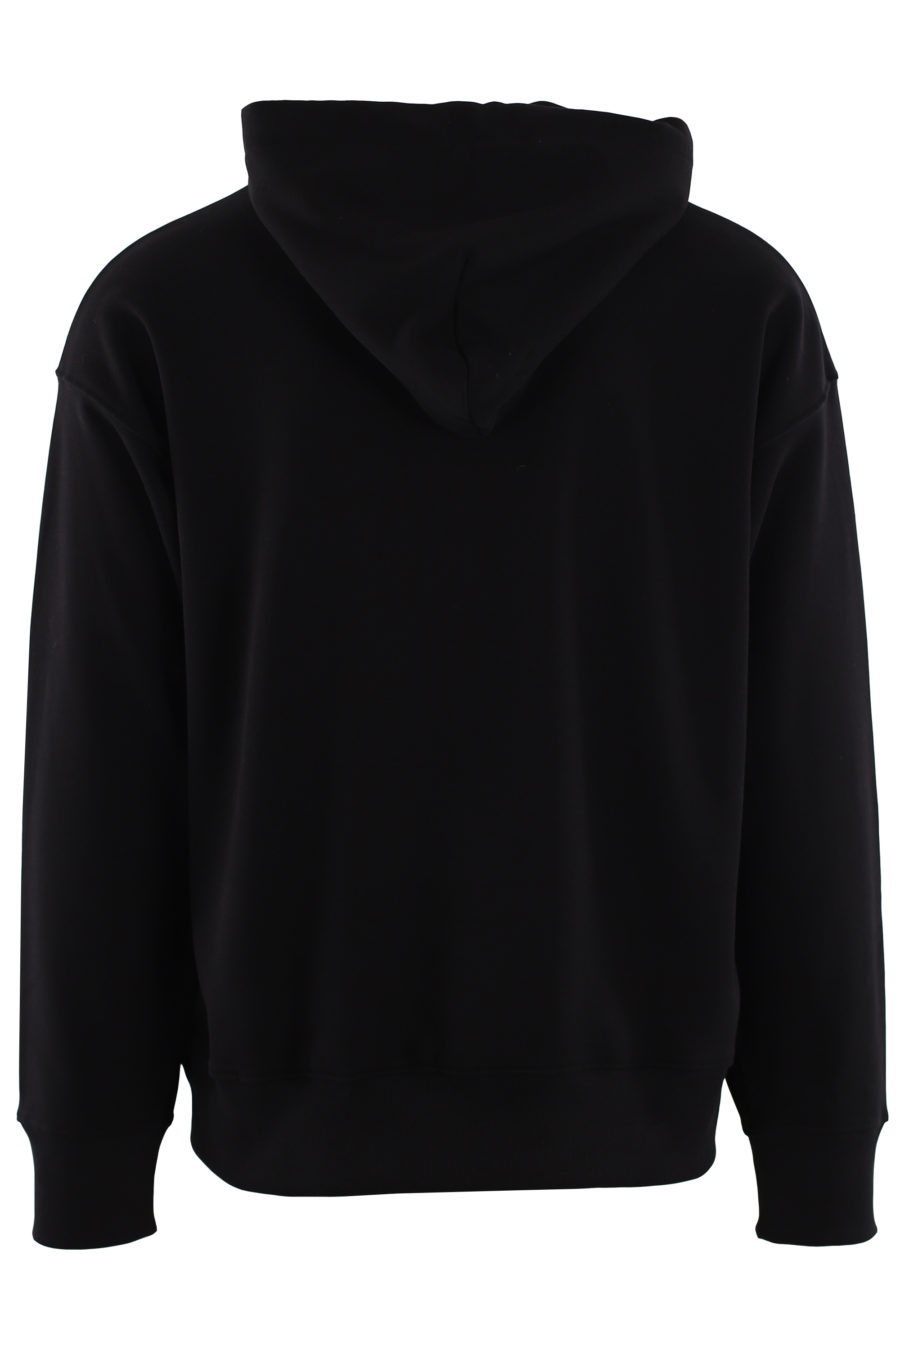 Schwarzes Kapuzensweatshirt mit weißem und rotem gesticktem Logo - IMG 0462